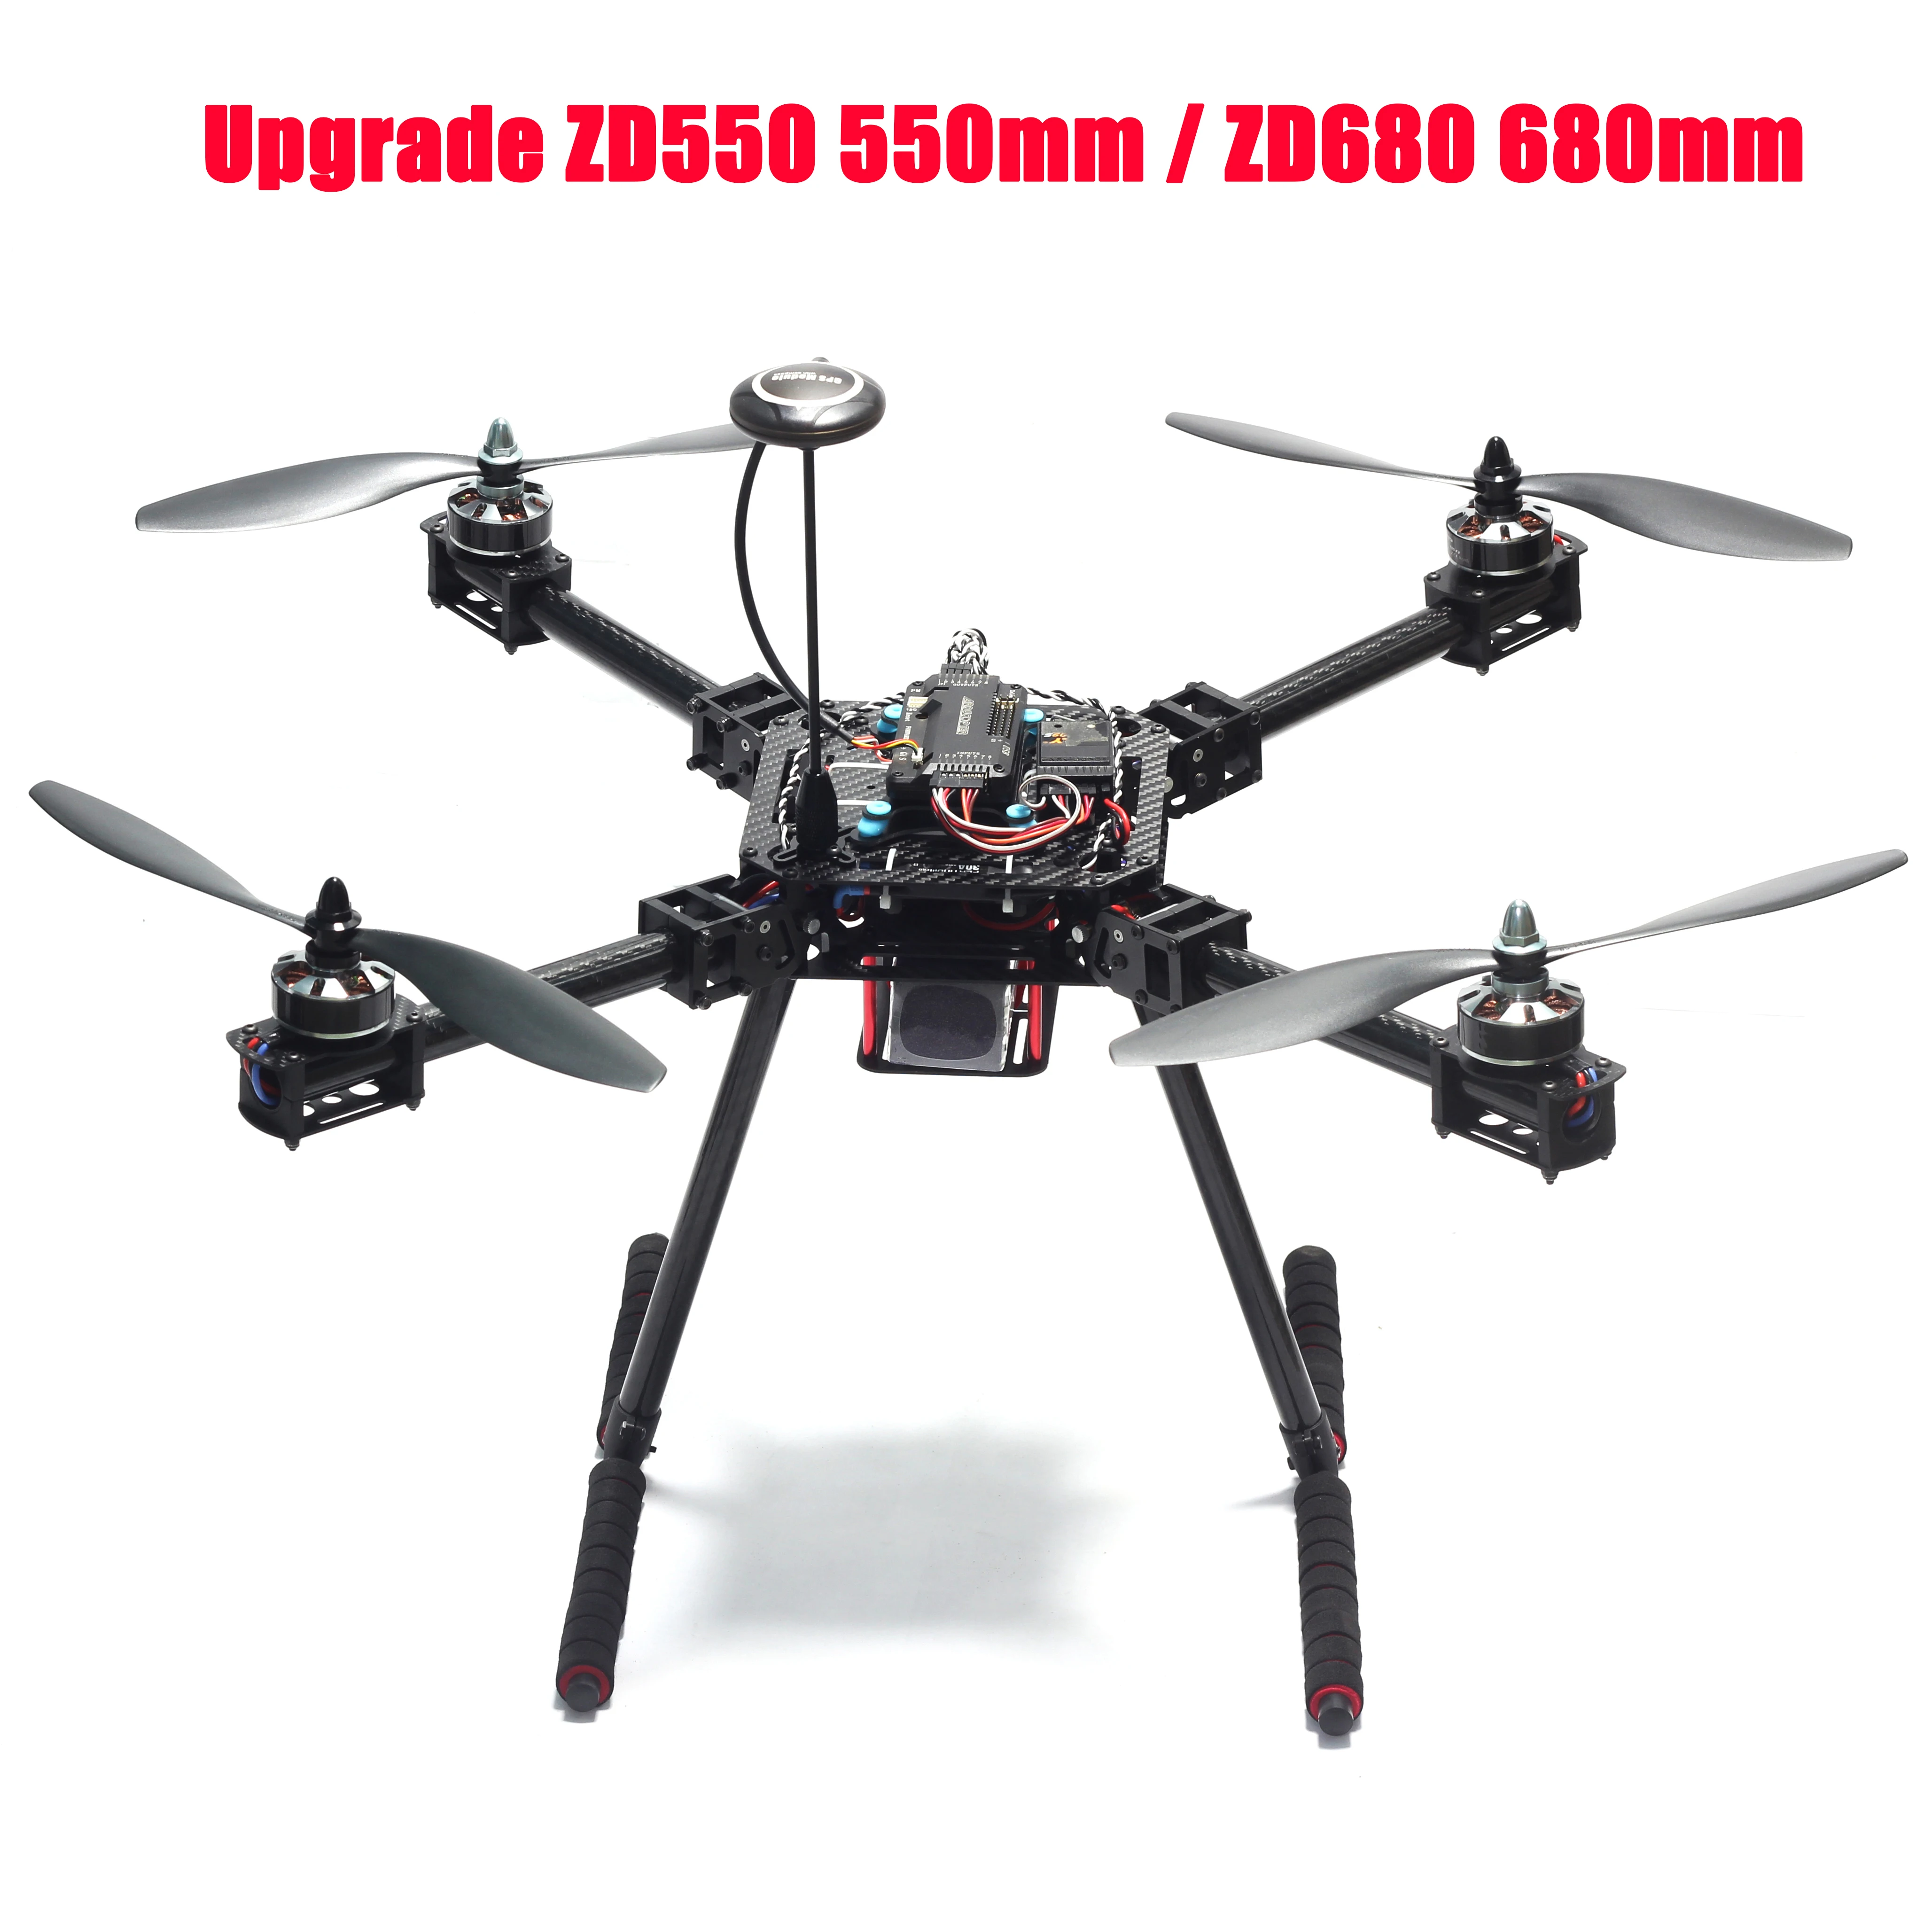 

Upgrade ZD550 550mm / ZD680 680mm Carbon Fiber Quadcopter Frame for F550 FPV Quad with Carbon Fiber Landing Skid